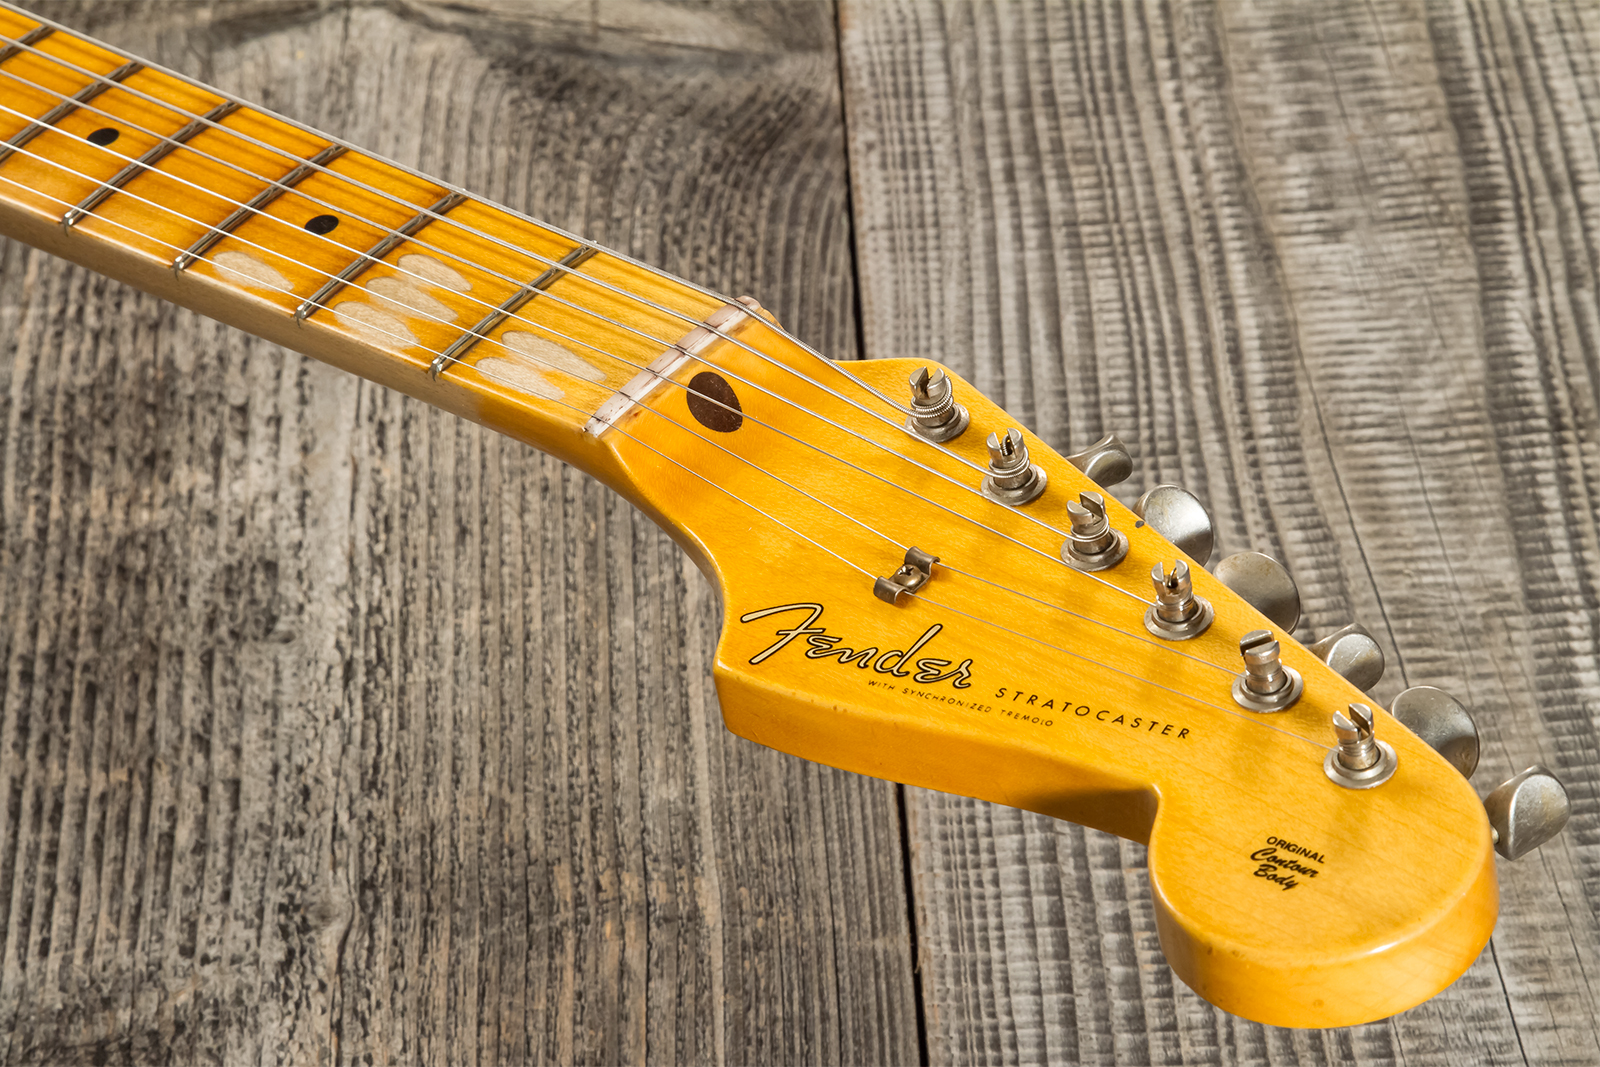 Fender Custom Shop Strat 1956 3s Trem Mn #cz571884 - Journeyman Relic Aged 2-color Sunburst - E-Gitarre in Str-Form - Variation 8